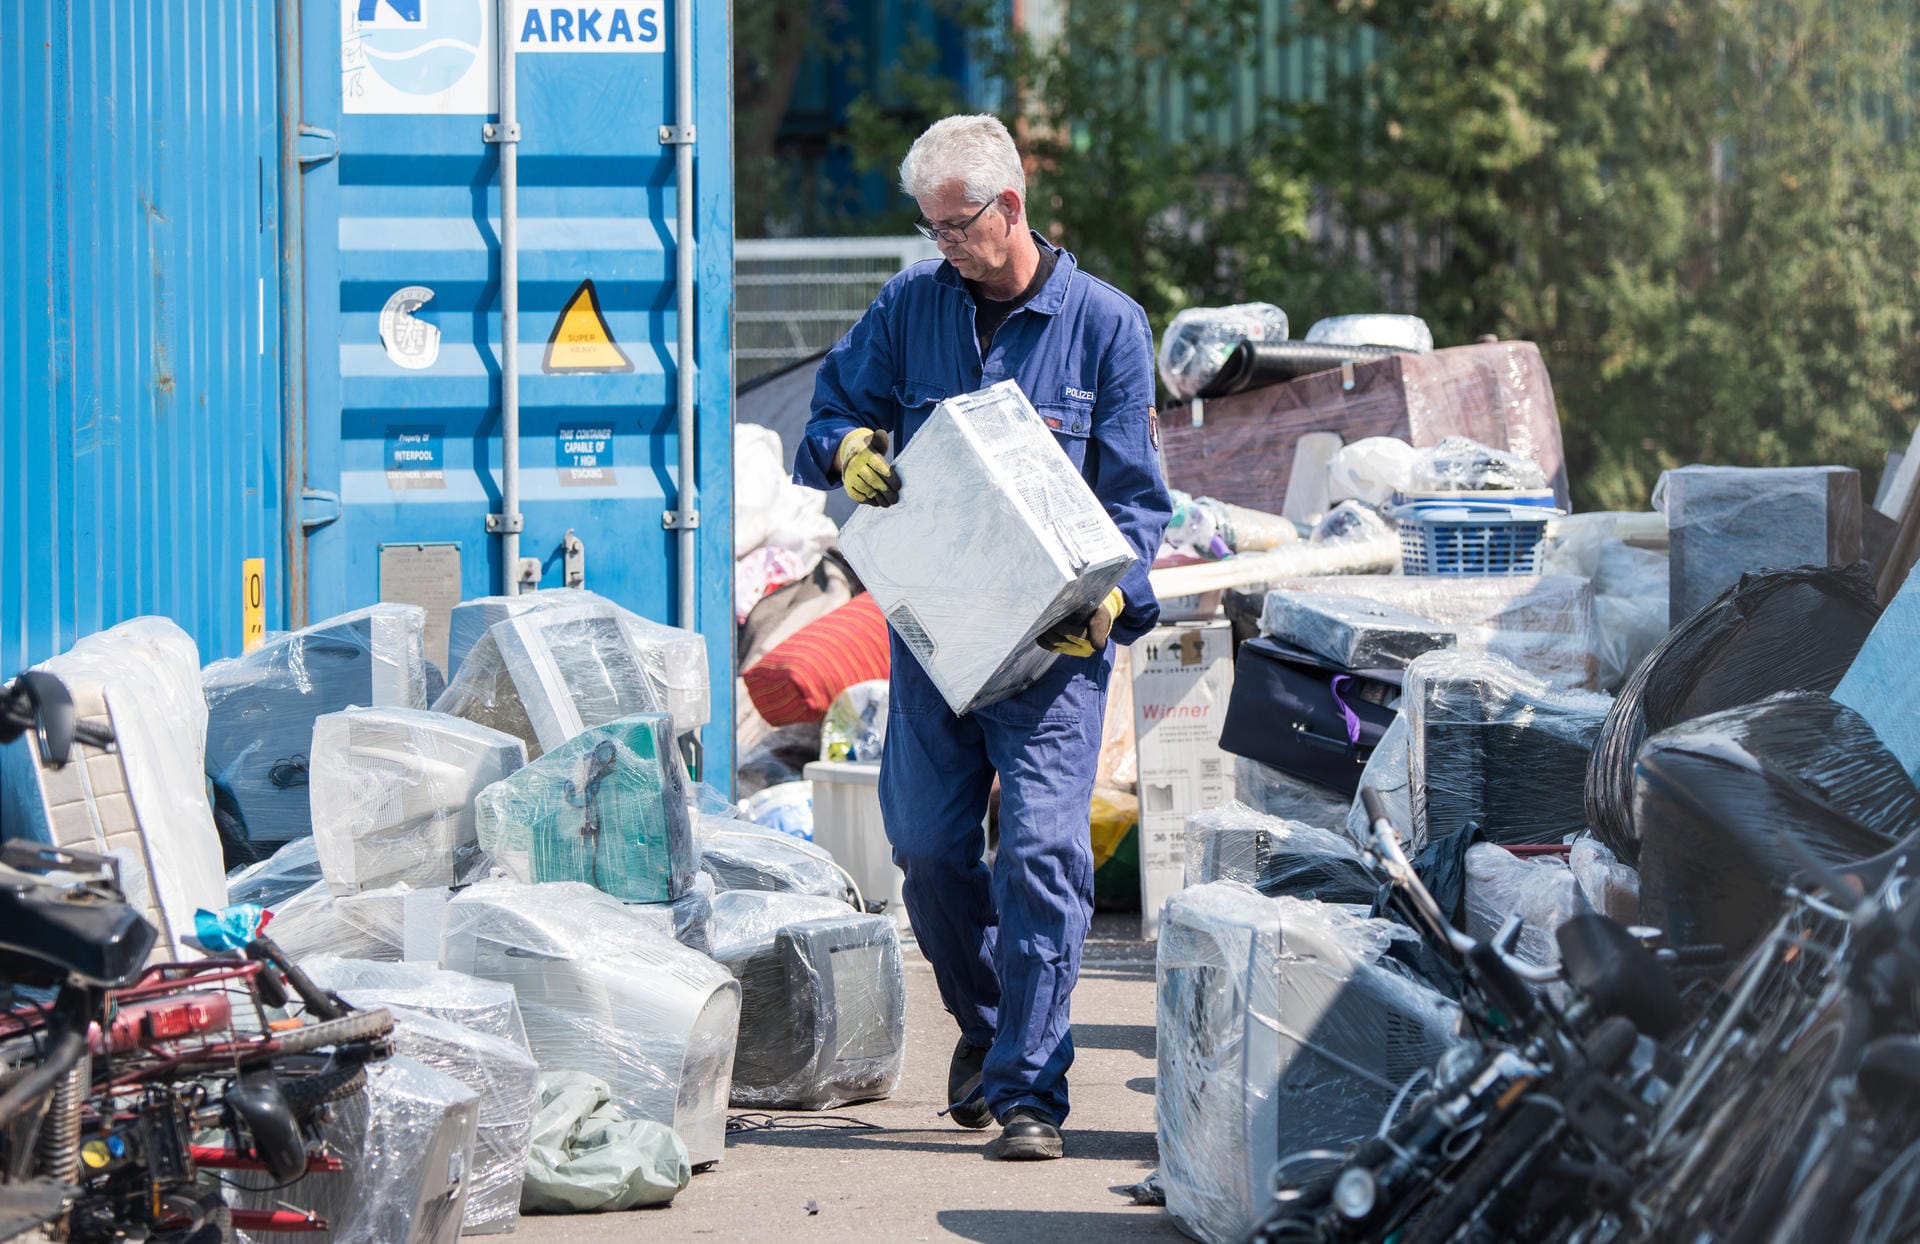 Polizeioberkommissar Wolfgang Heidorn, Wasserschutzpolizist, kontrolliert auf dem Gelände einer Spedition im Stadtteil Wilhelmsburg den Inhalt eines Containers. Es könnten darin Elektrogeräte versteckt sein, die nicht mehr funktionieren.